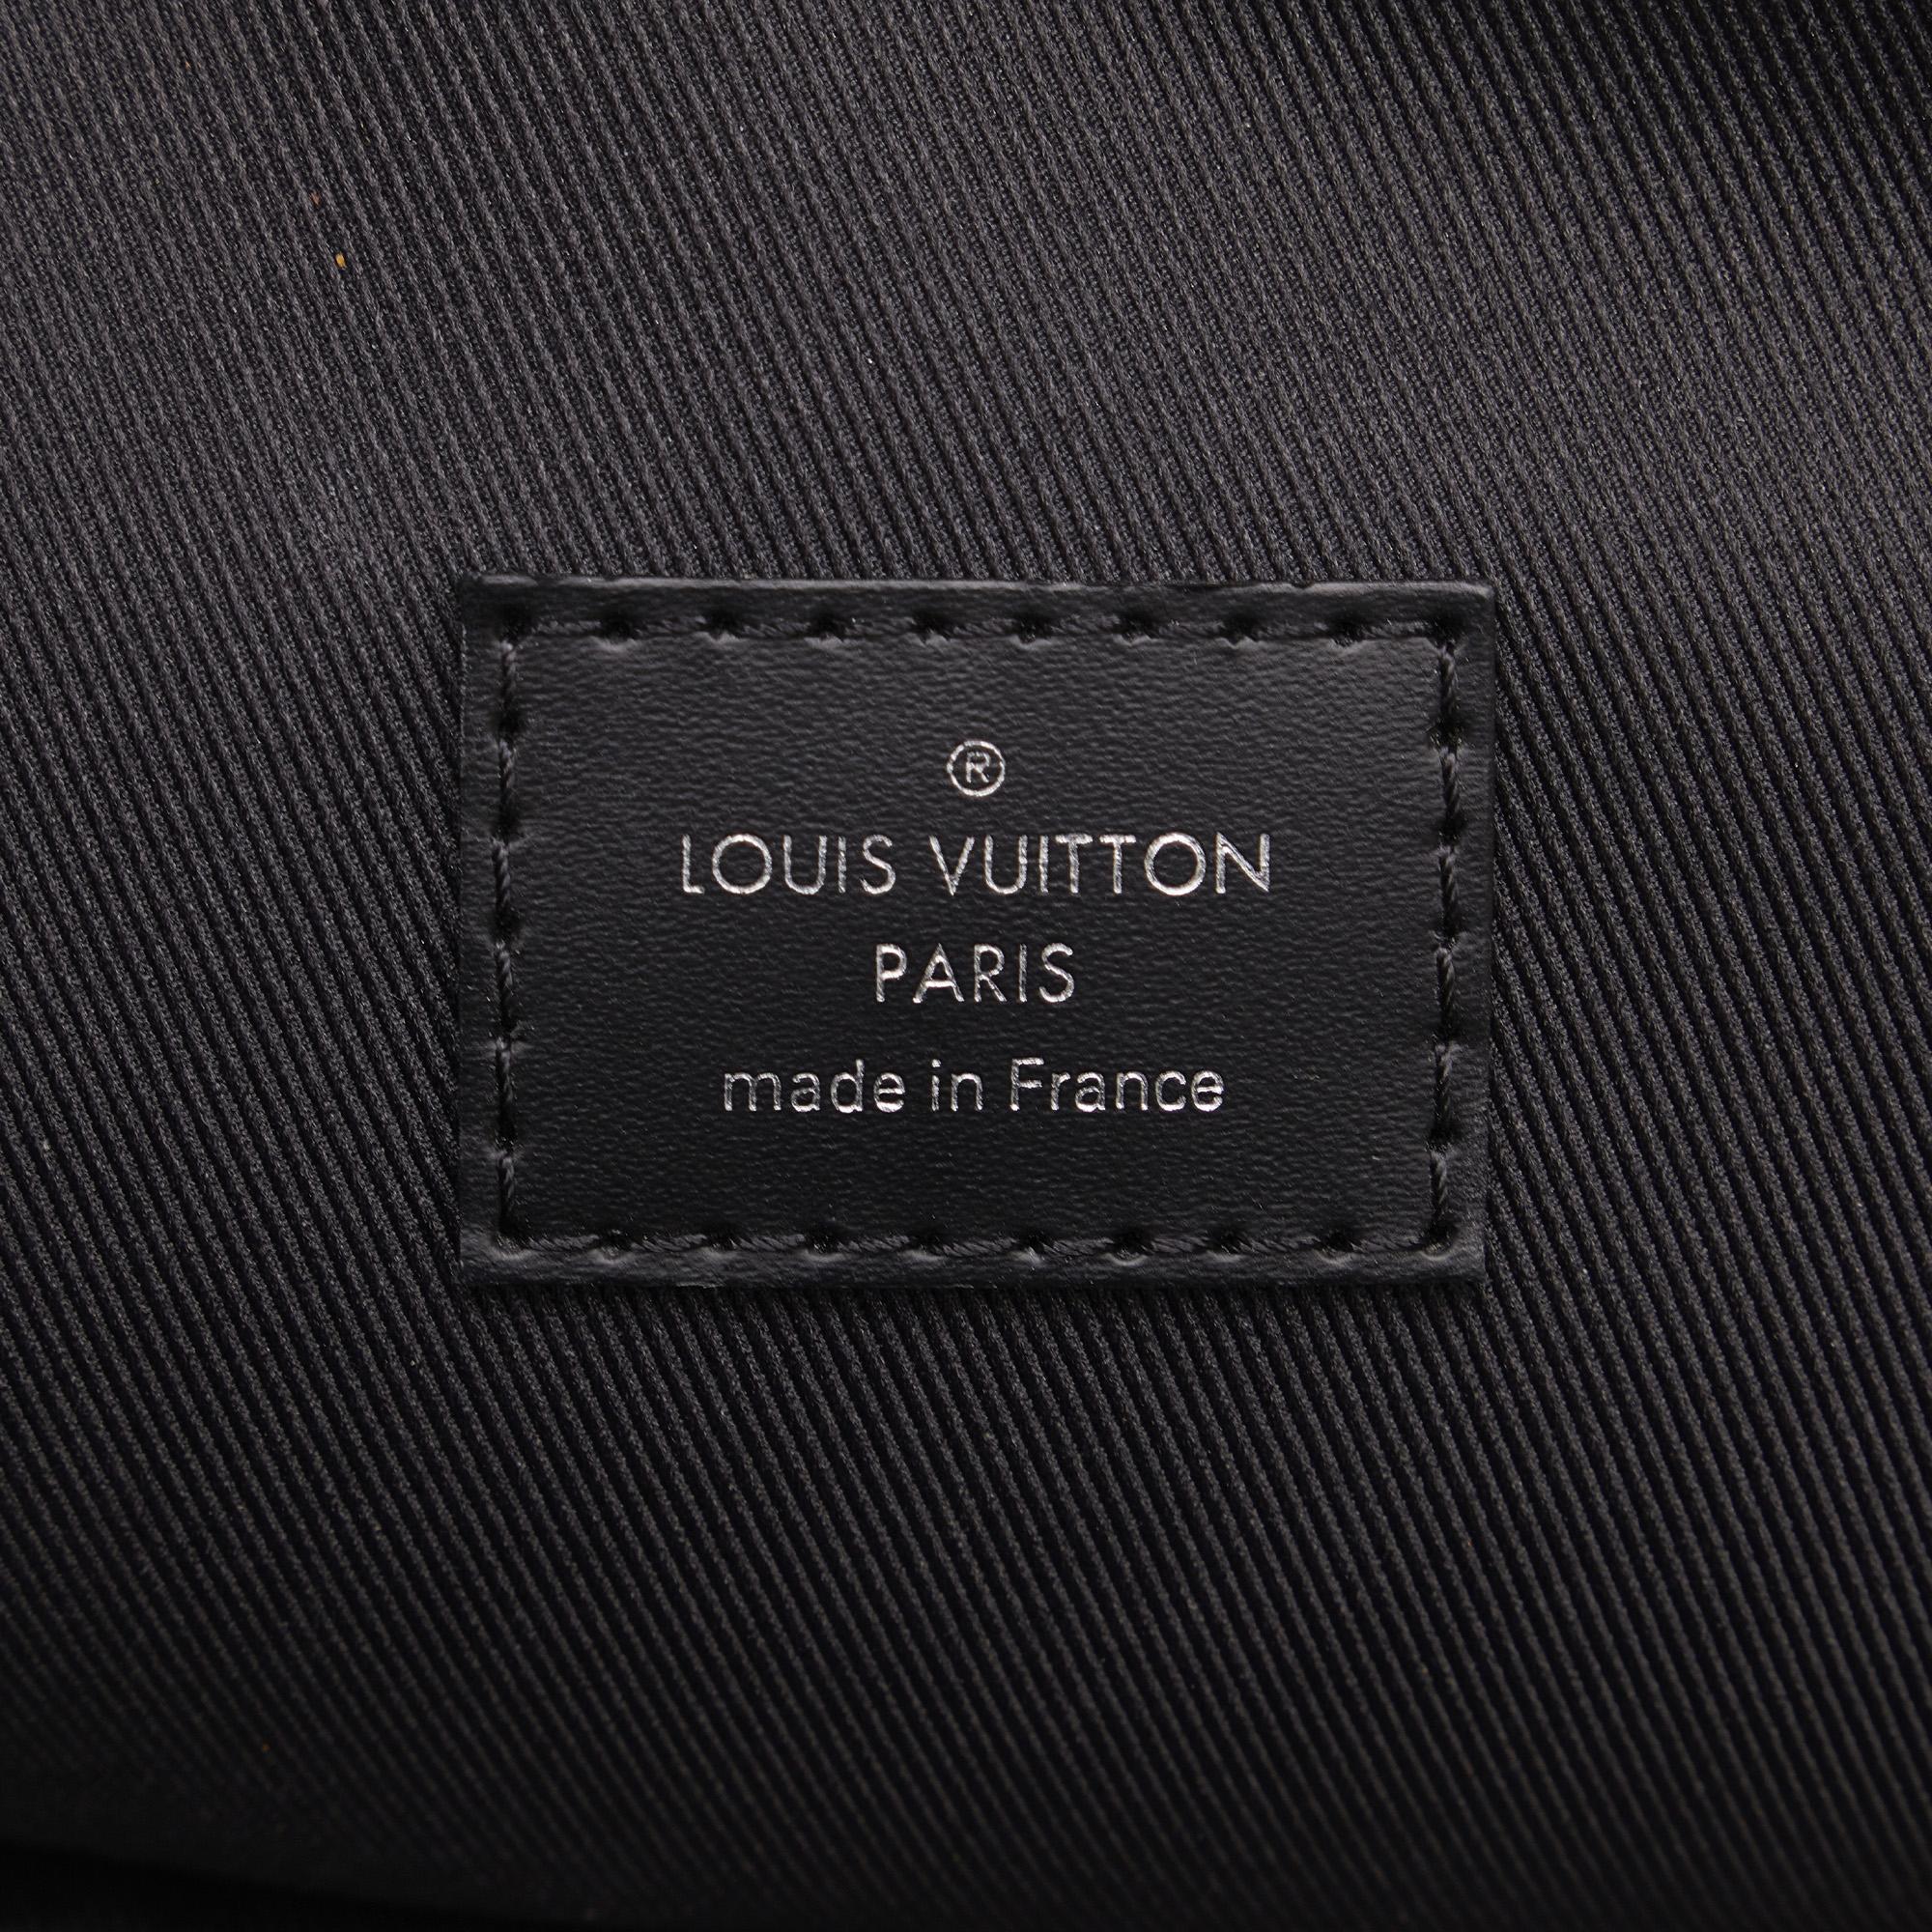 Louis Vuitton Black/Grey Damier Graphite Avenue Sling